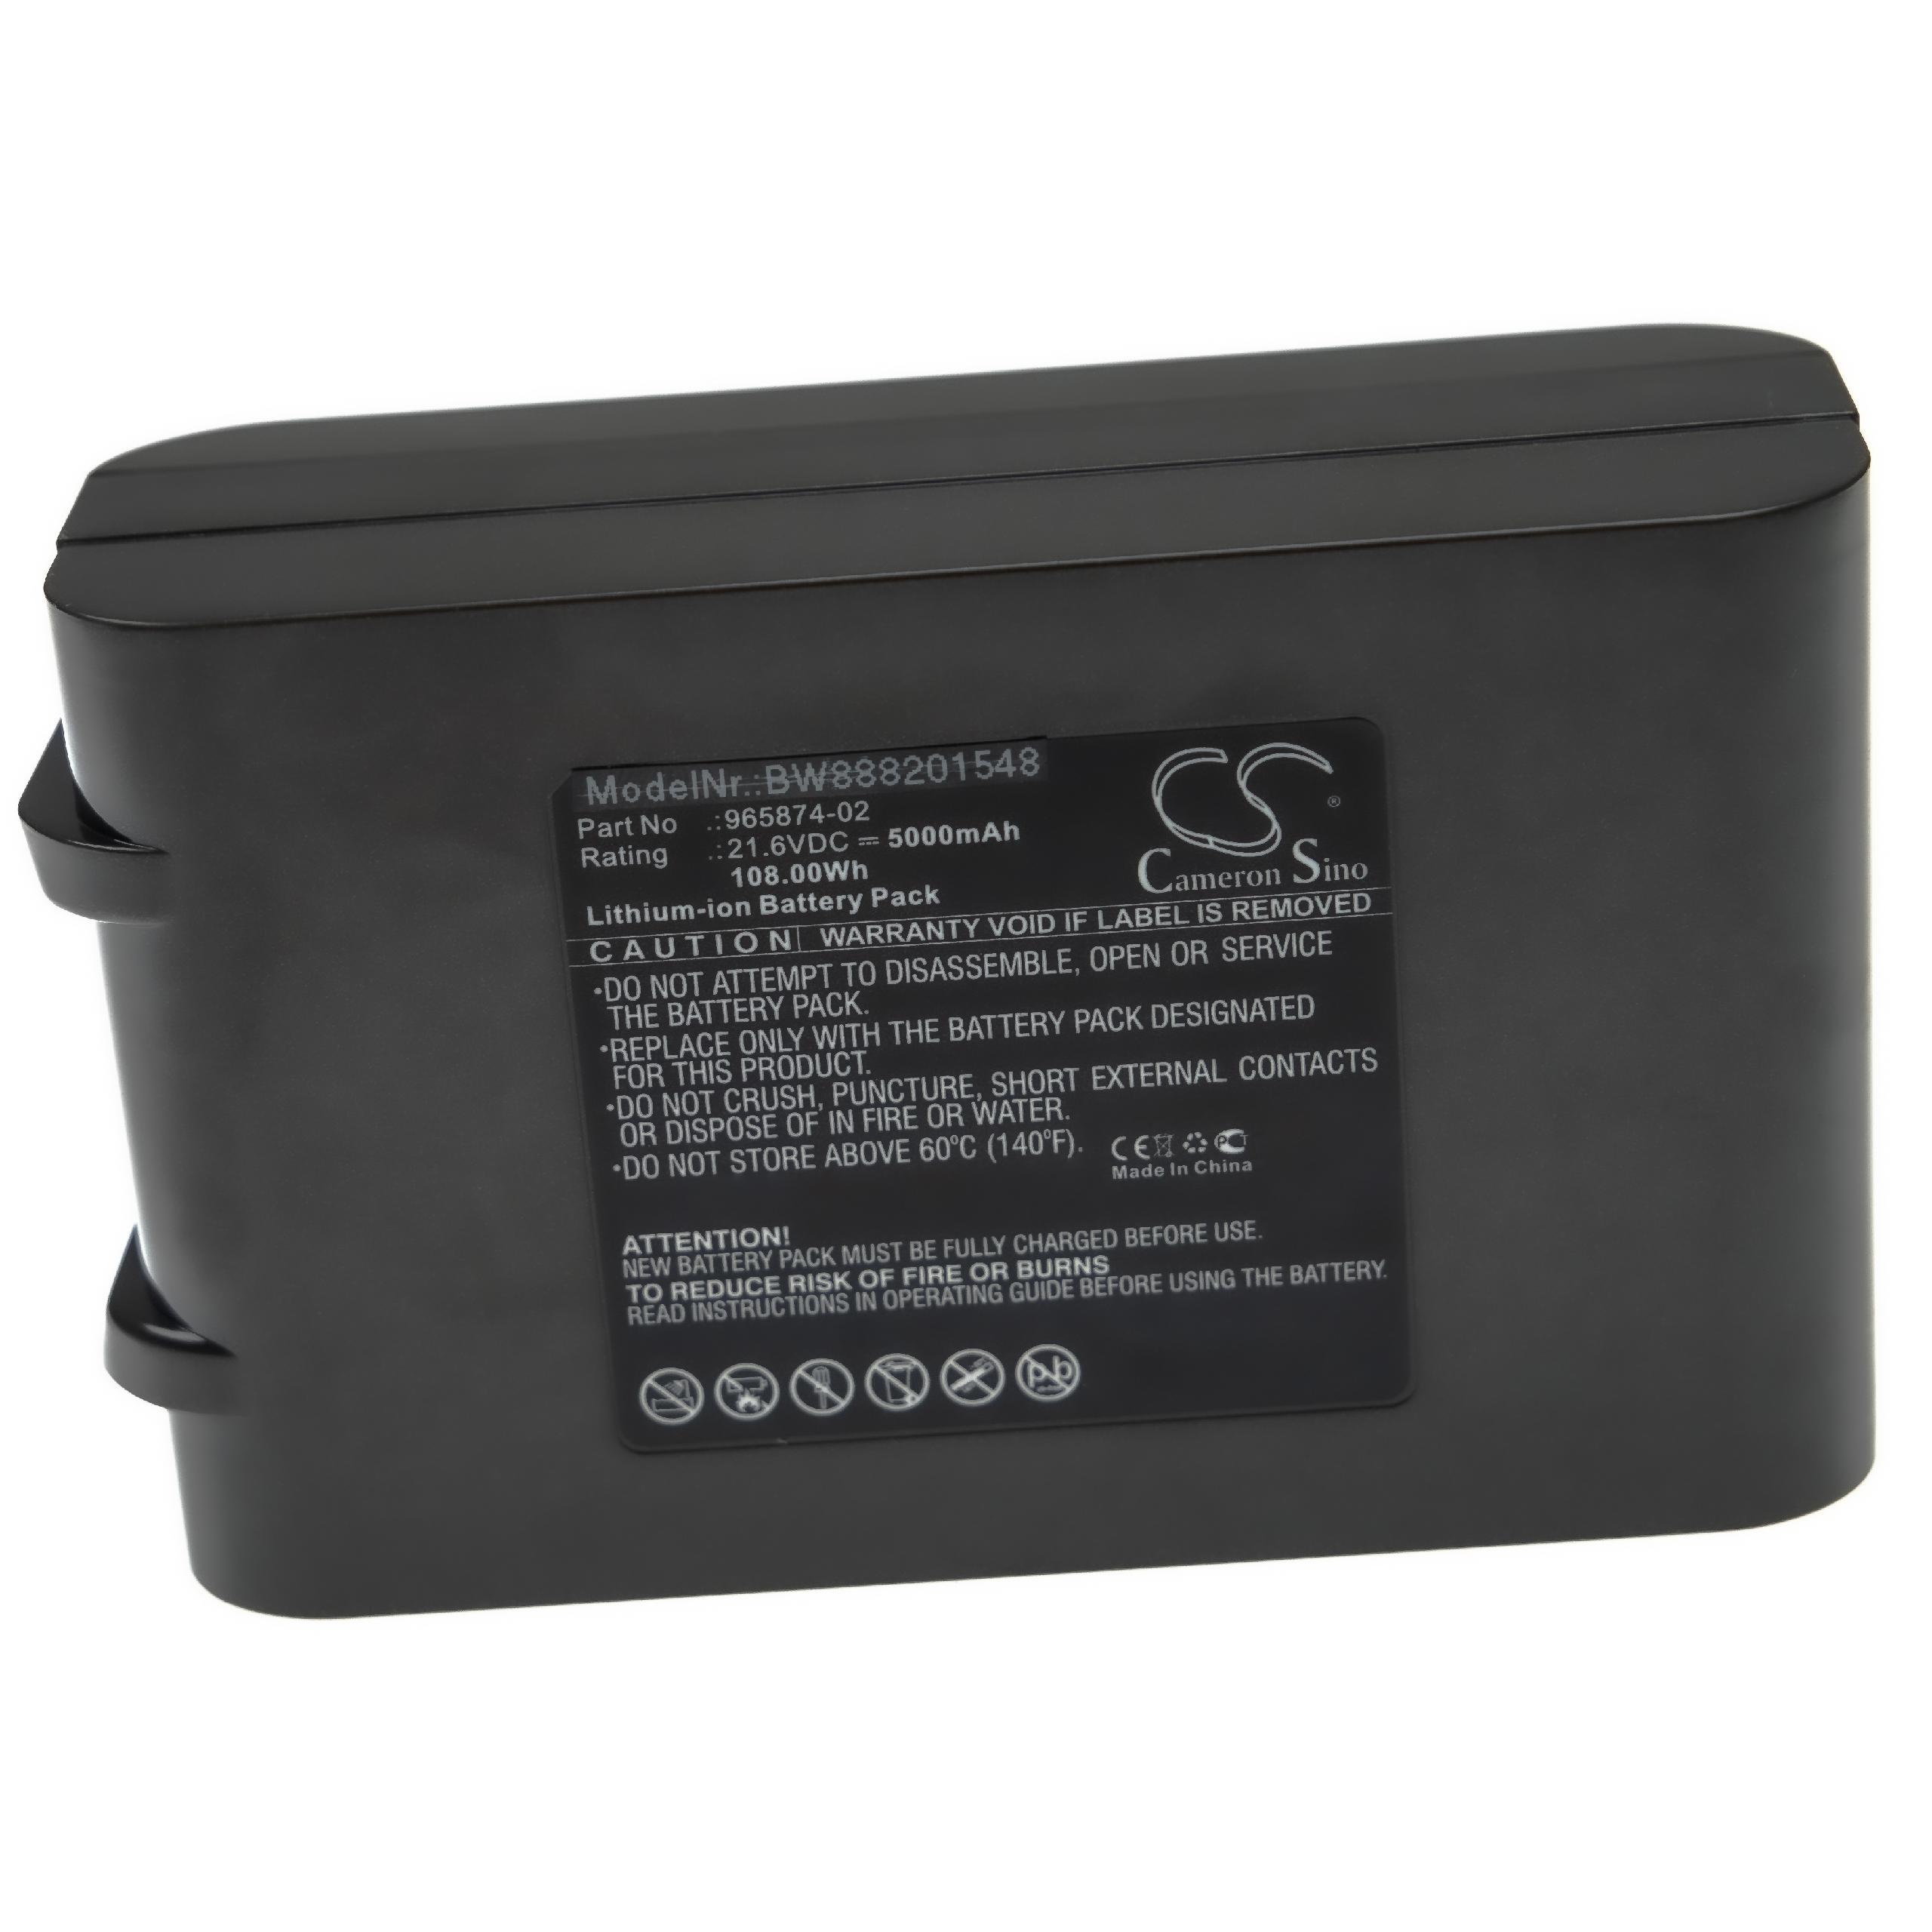 Batterie remplace Dyson 965874-02, 205794-01/04, 965874-01, 965874-03 pour aspirateur - 5000mAh 21,6V Li-ion